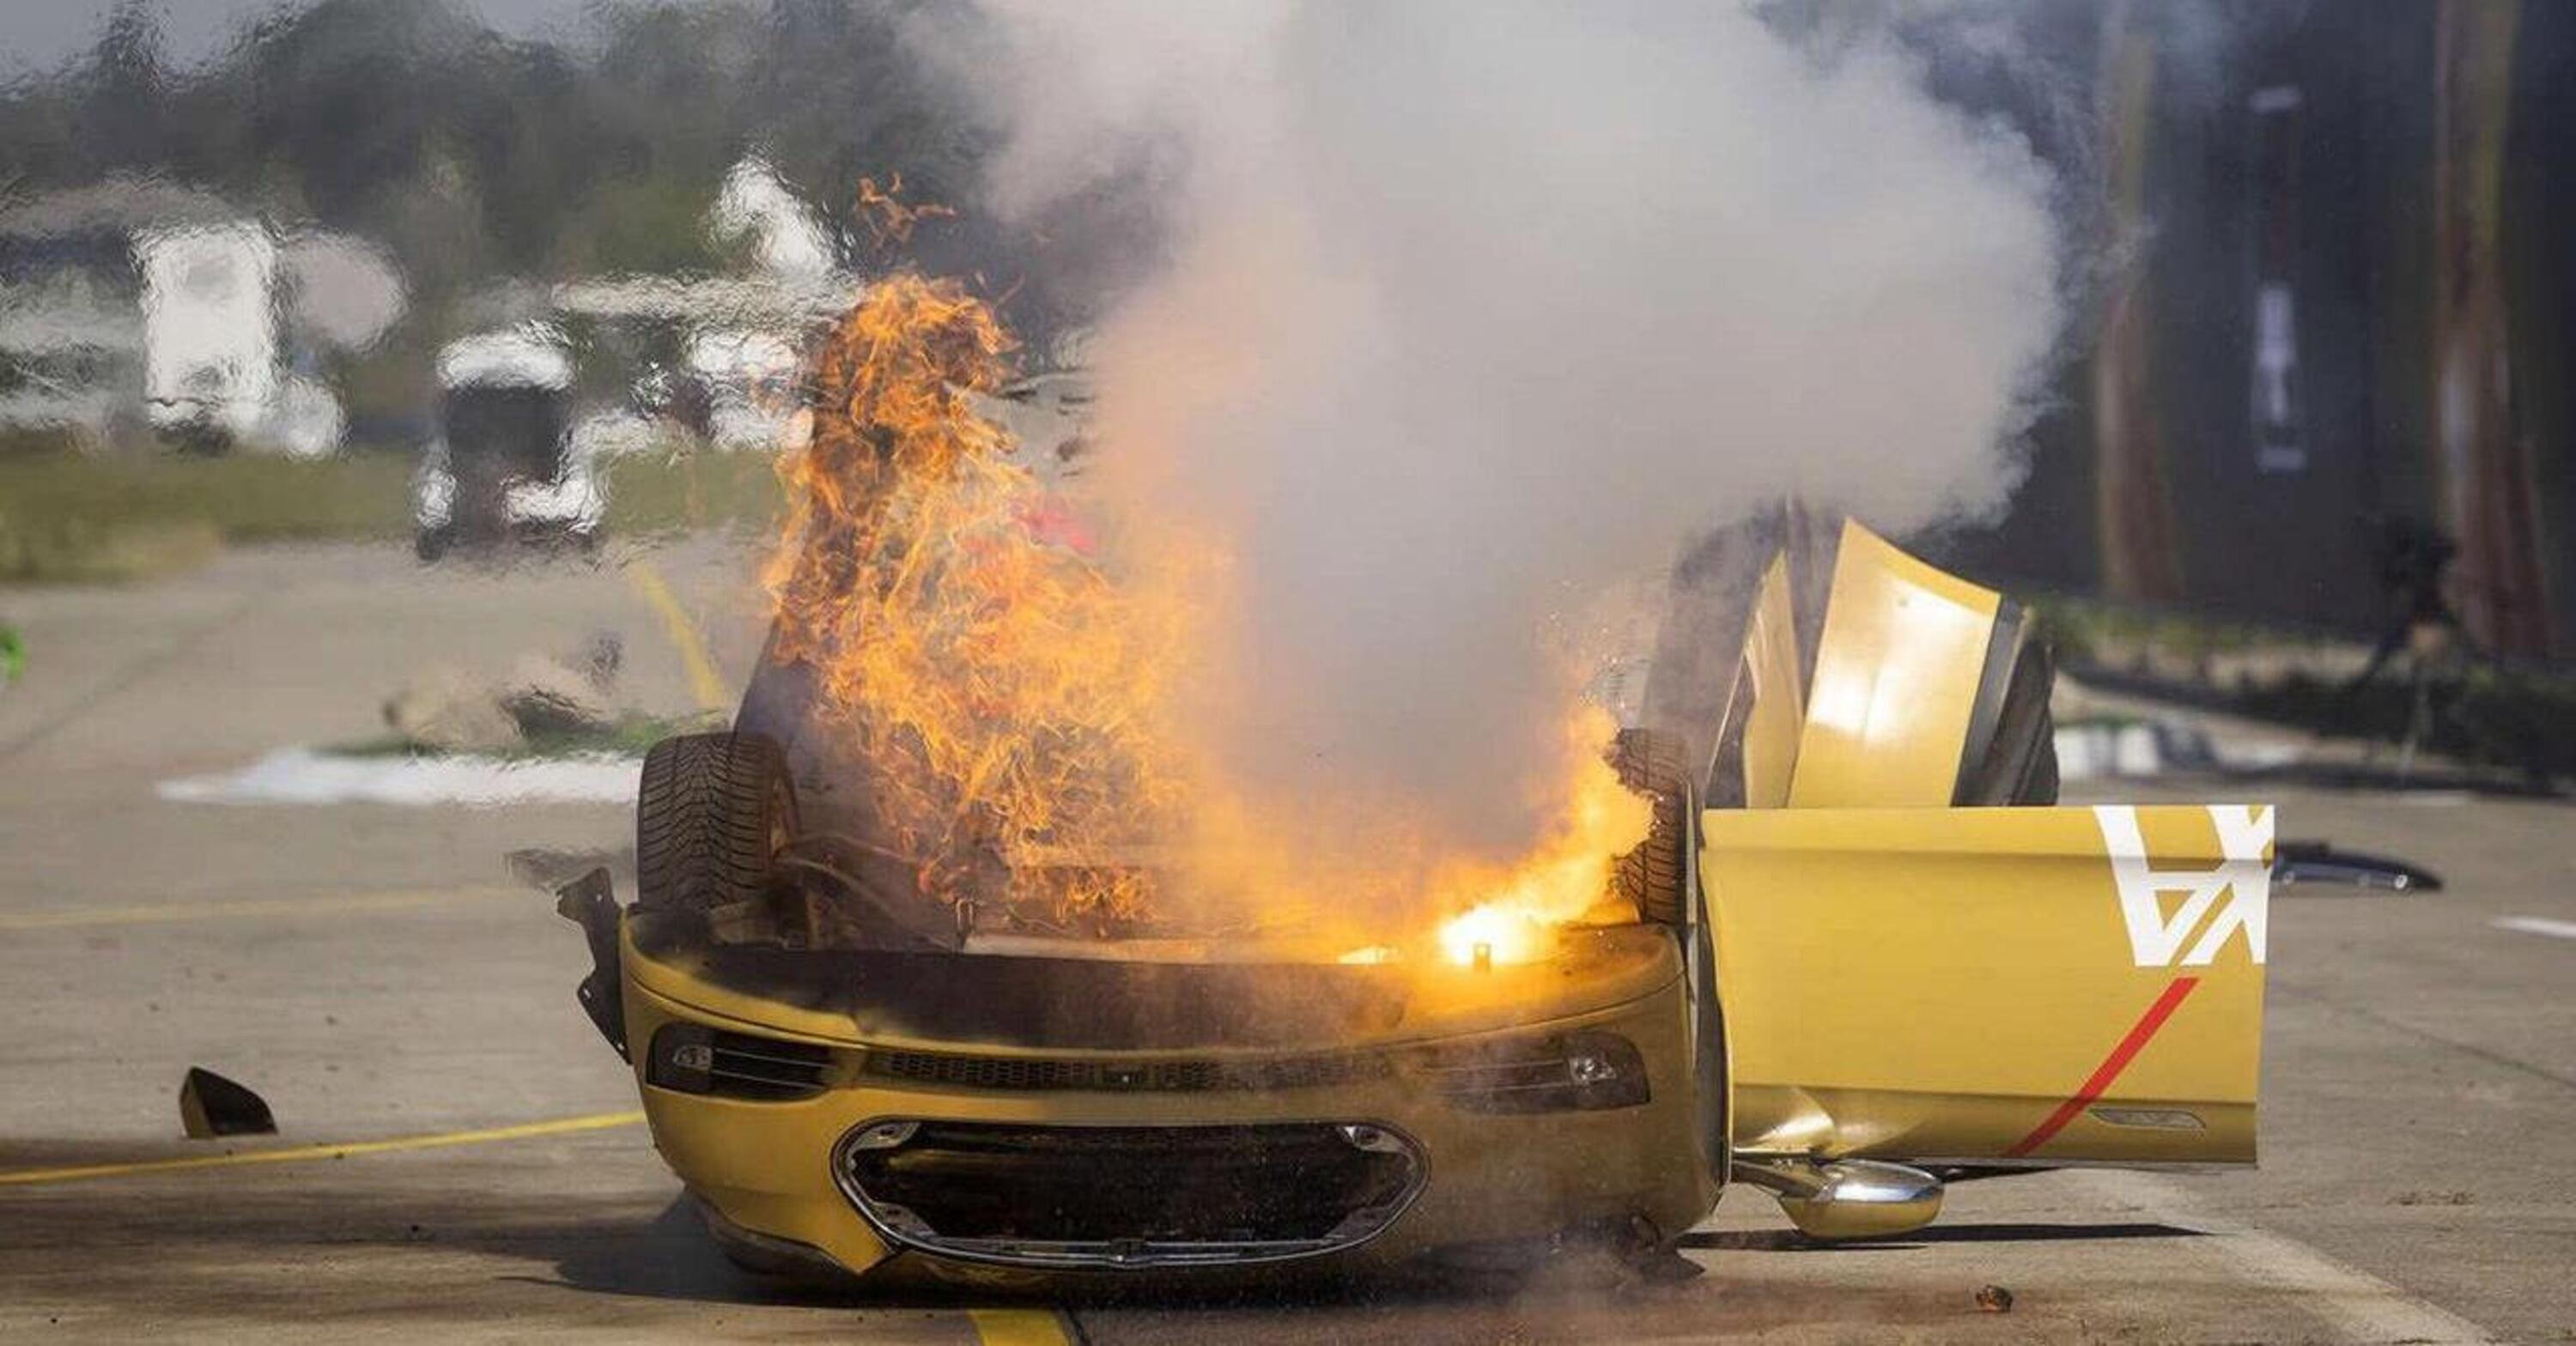 Finto crash test con incendio, Axa si scusa con Tesla